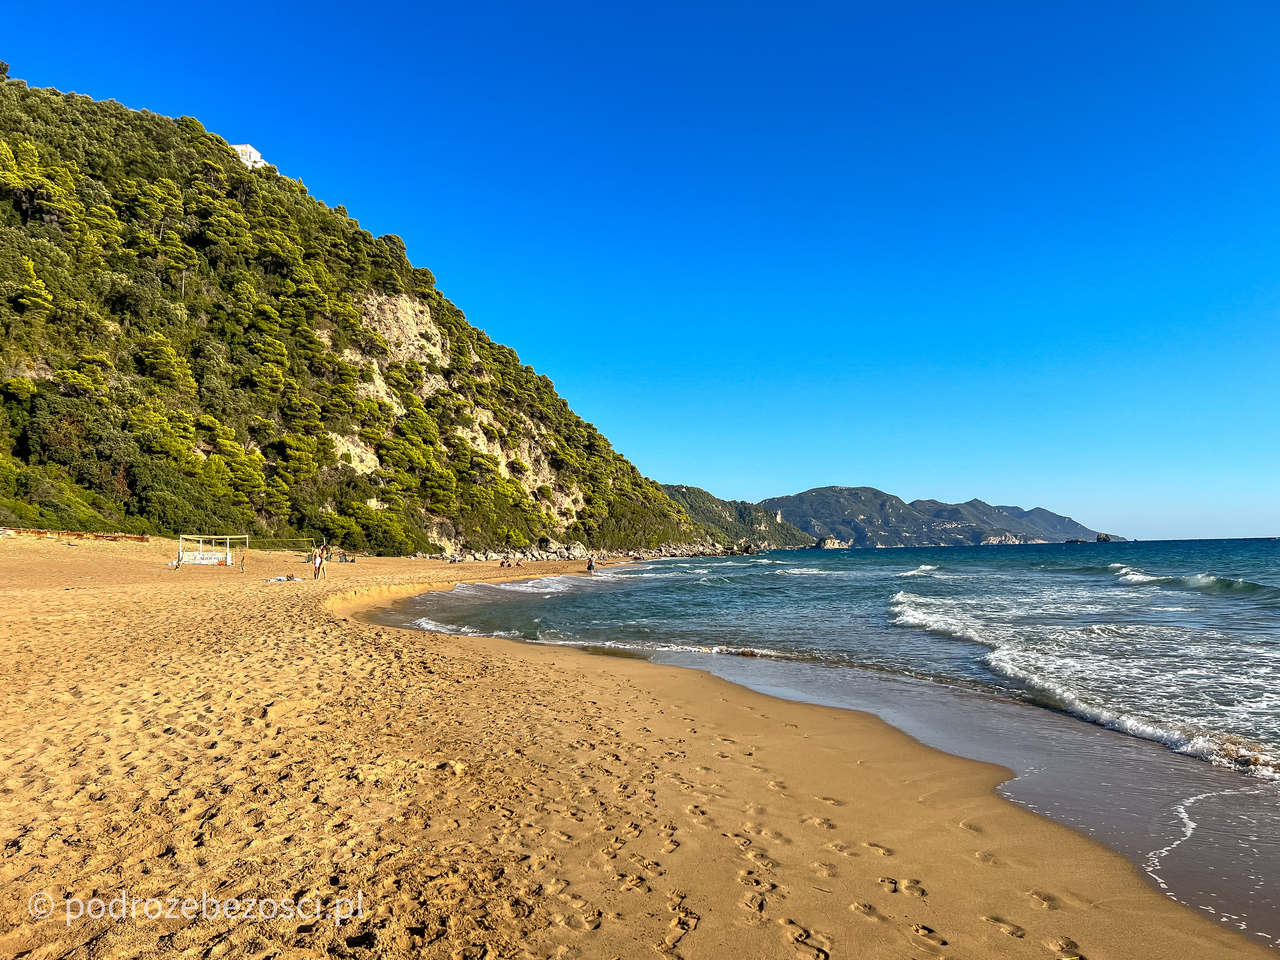 glyfada beach najpiekniejsze-plaze-na-korfu-grecja-plaza-piaszczysta-gdzie-warto-plazowac-jak-wygladaja-plaze-na-korfu-mapa-top-10-beaches-corfu-greece